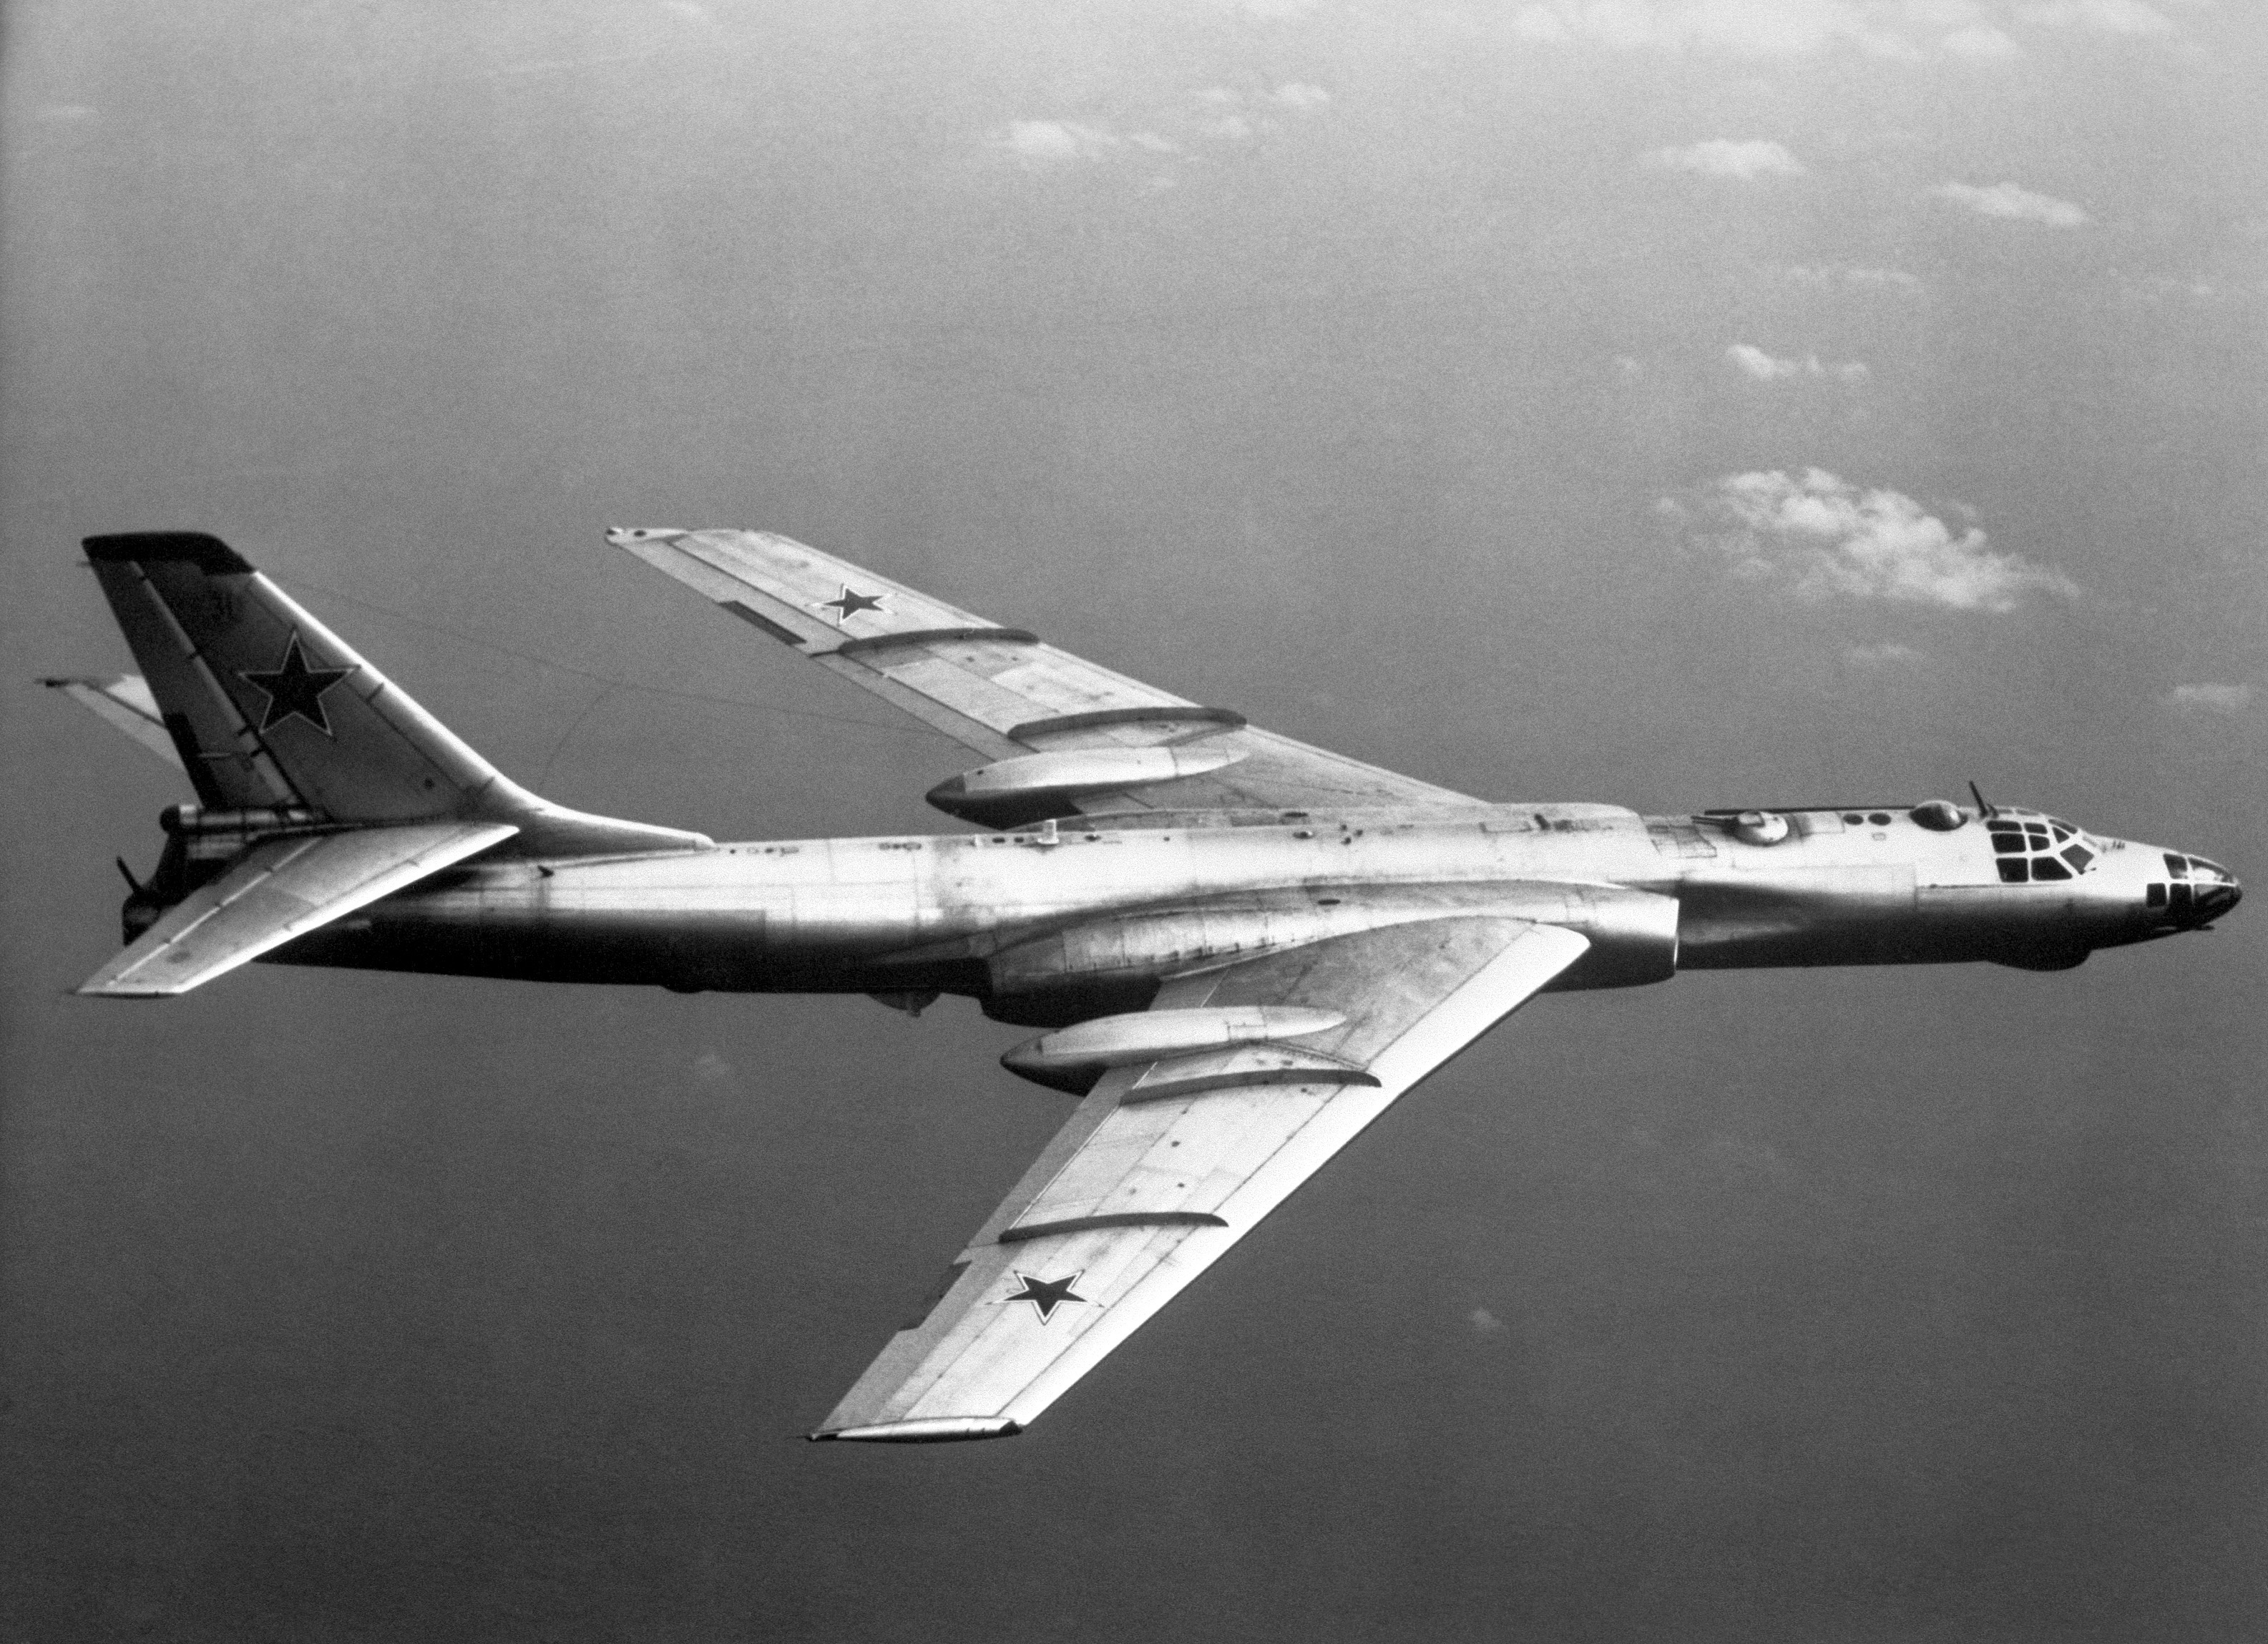 Картинка бомбардировщика. Ту-16 реактивный самолёт. Ту-16 бомбардировщик. Самолет бомбардировщик ту 16. Ту-16 реактивный самолёт бомбардировщики.